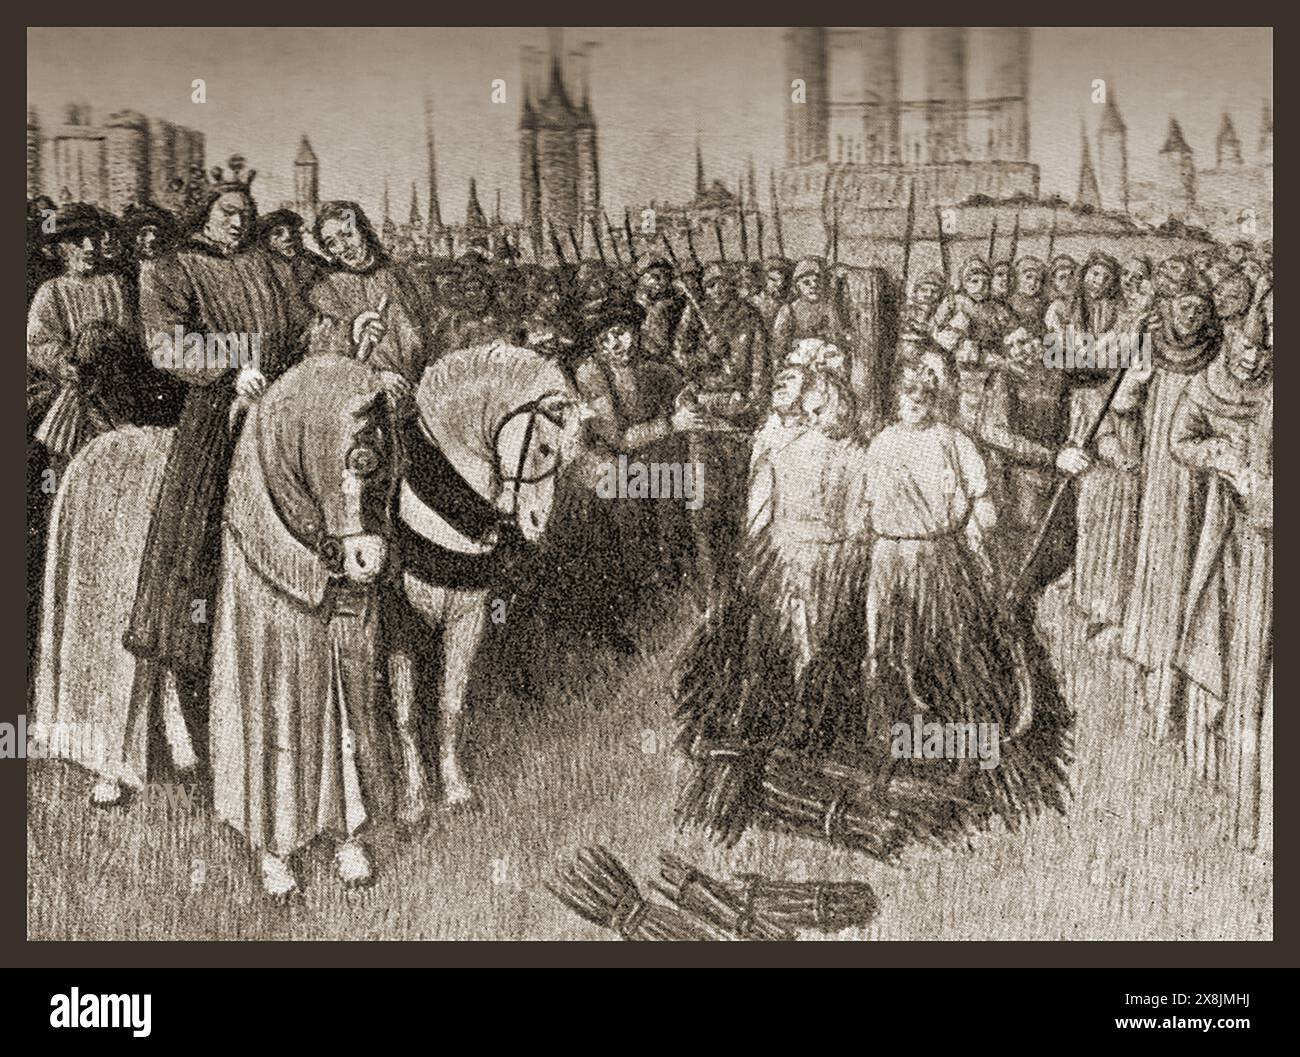 Ein historischer Druck von Frauen (wahrscheinlich Ketzern), die auf dem Scheiterhaufen in Paris verbrannt werden - Gravure historique de femmes brûlées sur le bûcher à Paris, en France. Stockfoto